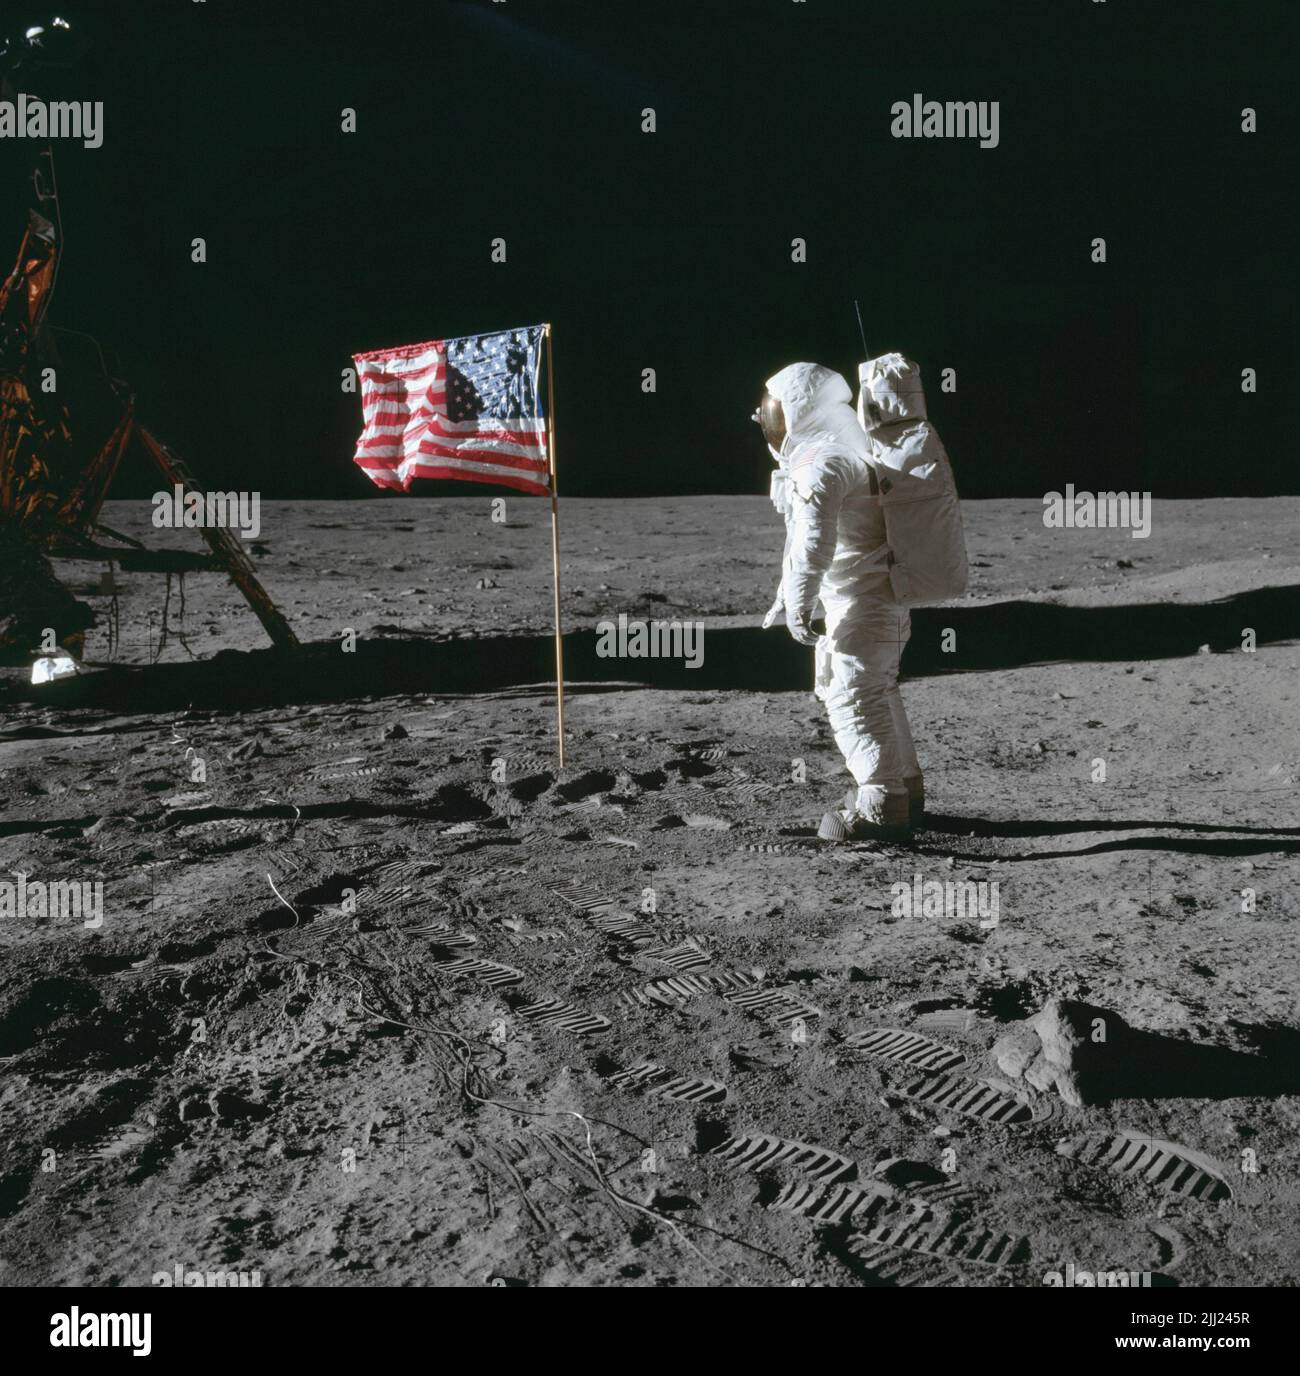 La Giornata della bandiera si celebra il 14 giugno di ogni anno e commemora l'adozione della bandiera degli Stati Uniti il 14 giugno 1777, da parte del secondo Congresso continentale. La NASA vola la bandiera degli Stati Uniti sulle sue missioni in tutto il nostro sistema solare. In questa immagine iconica dell'atterraggio lunare Apollo 11, il comandante Neil Armstrong ha scattato questa foto di Buzz Aldrin salendo la bandiera alla base tranquility. Per saperne di più Gallery: The American Flag in U.S. Missions Flying High: The Stars and Stripes in Space Image Credit: NASA Last Updated: Jun 14, 2022 Editor: Yvette Smith Foto Stock